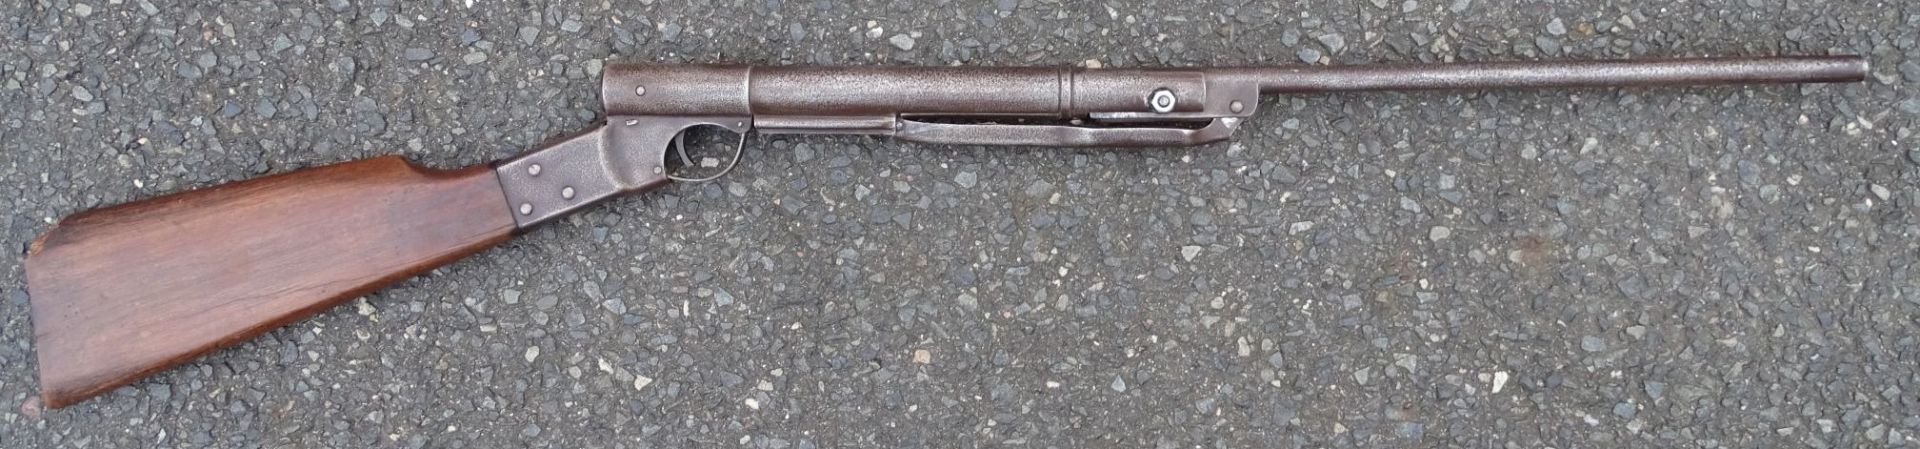 altes Luftdruckgewehr "Diana", Alters-u. Gebrauchsspuren, L-87 cm,- - -22.61 % buyer's premium on